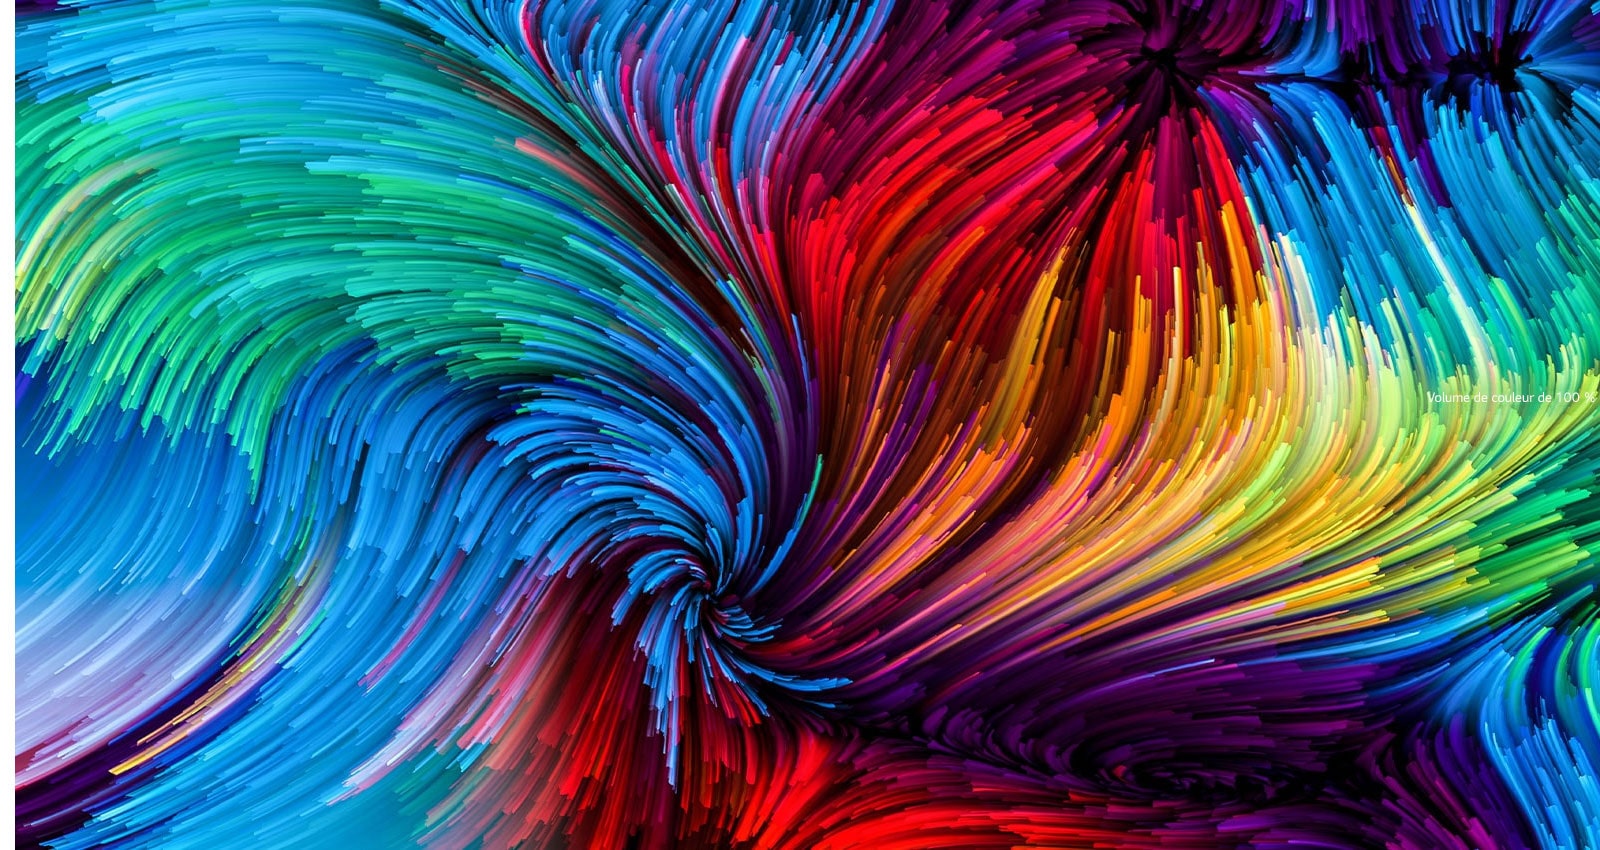 Une image de peinture numérique très colorée est divisée en deux secteurs : le haut est plus coloré et plus vif et le bas est relativement moins coloré et moins vif.